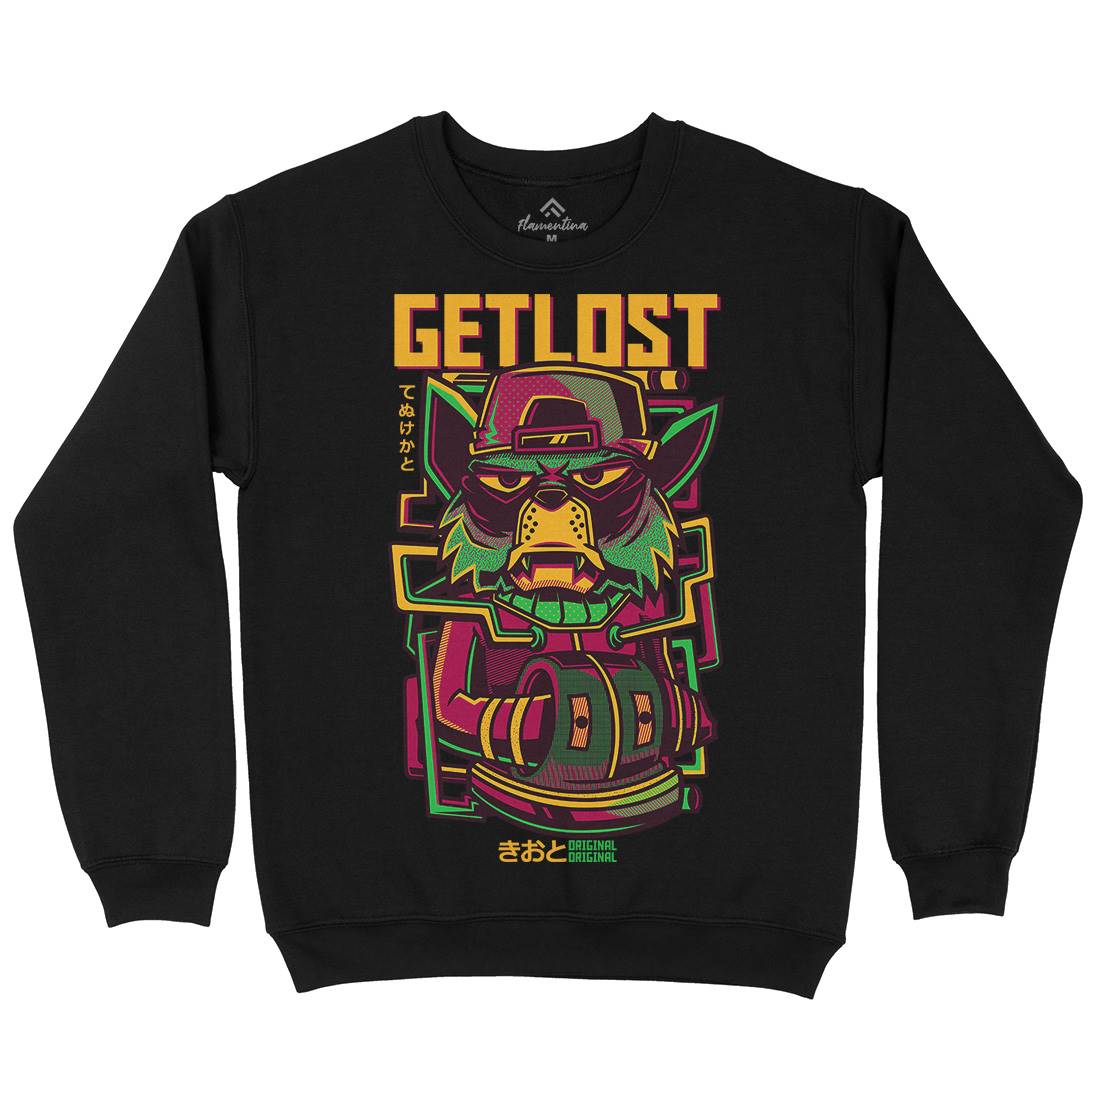 Get Lost Kids Crew Neck Sweatshirt Animals D793